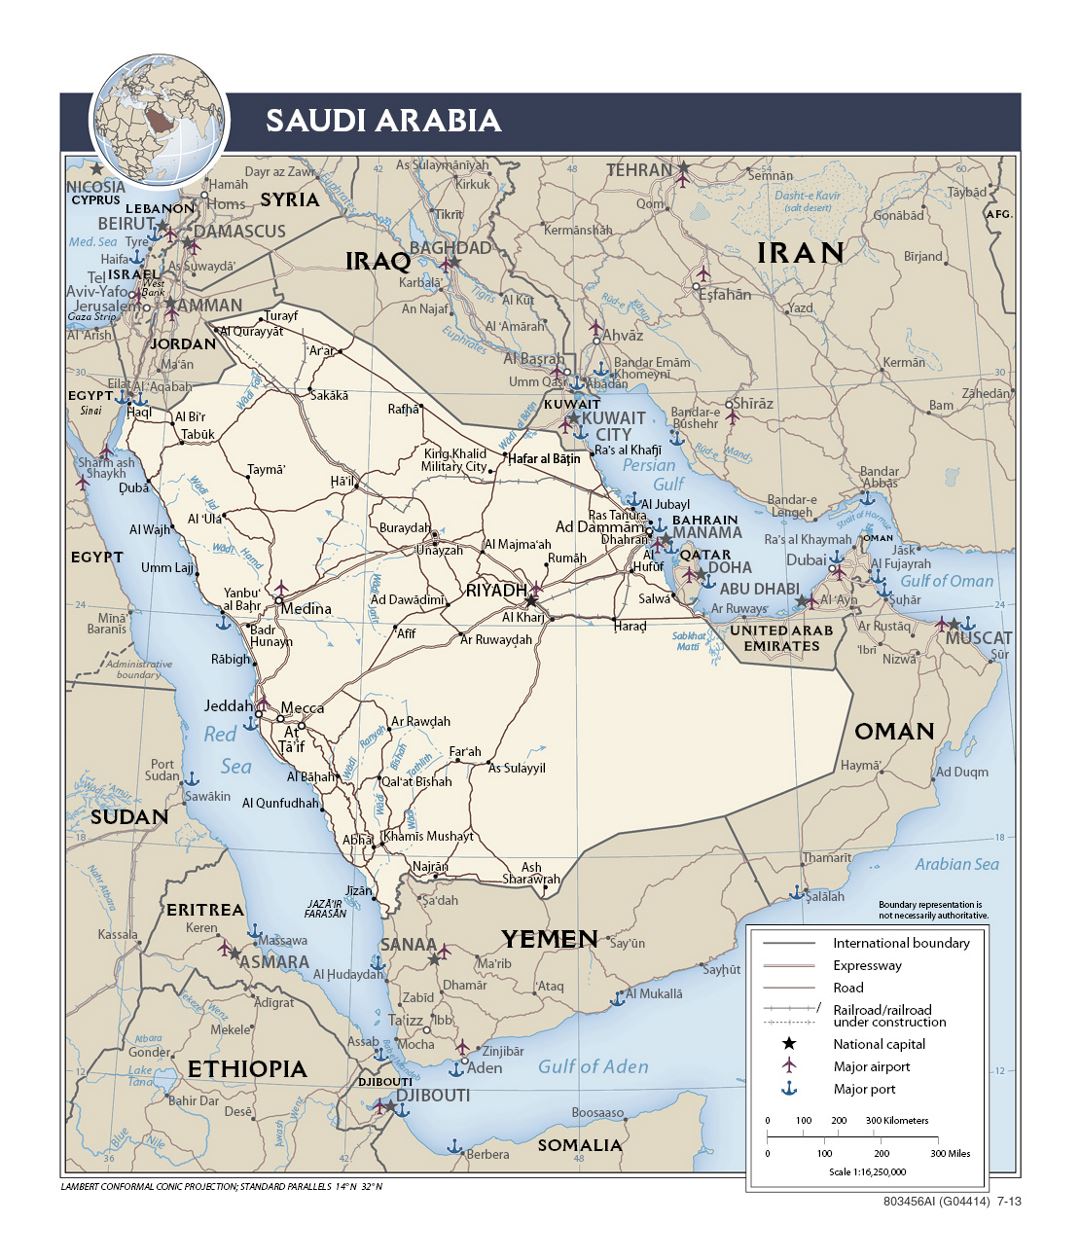 Detallado mapa político de Arabia Saudita con carreteras, ferrocarriles, puertos, aeropuertos y principales ciudades - 2013